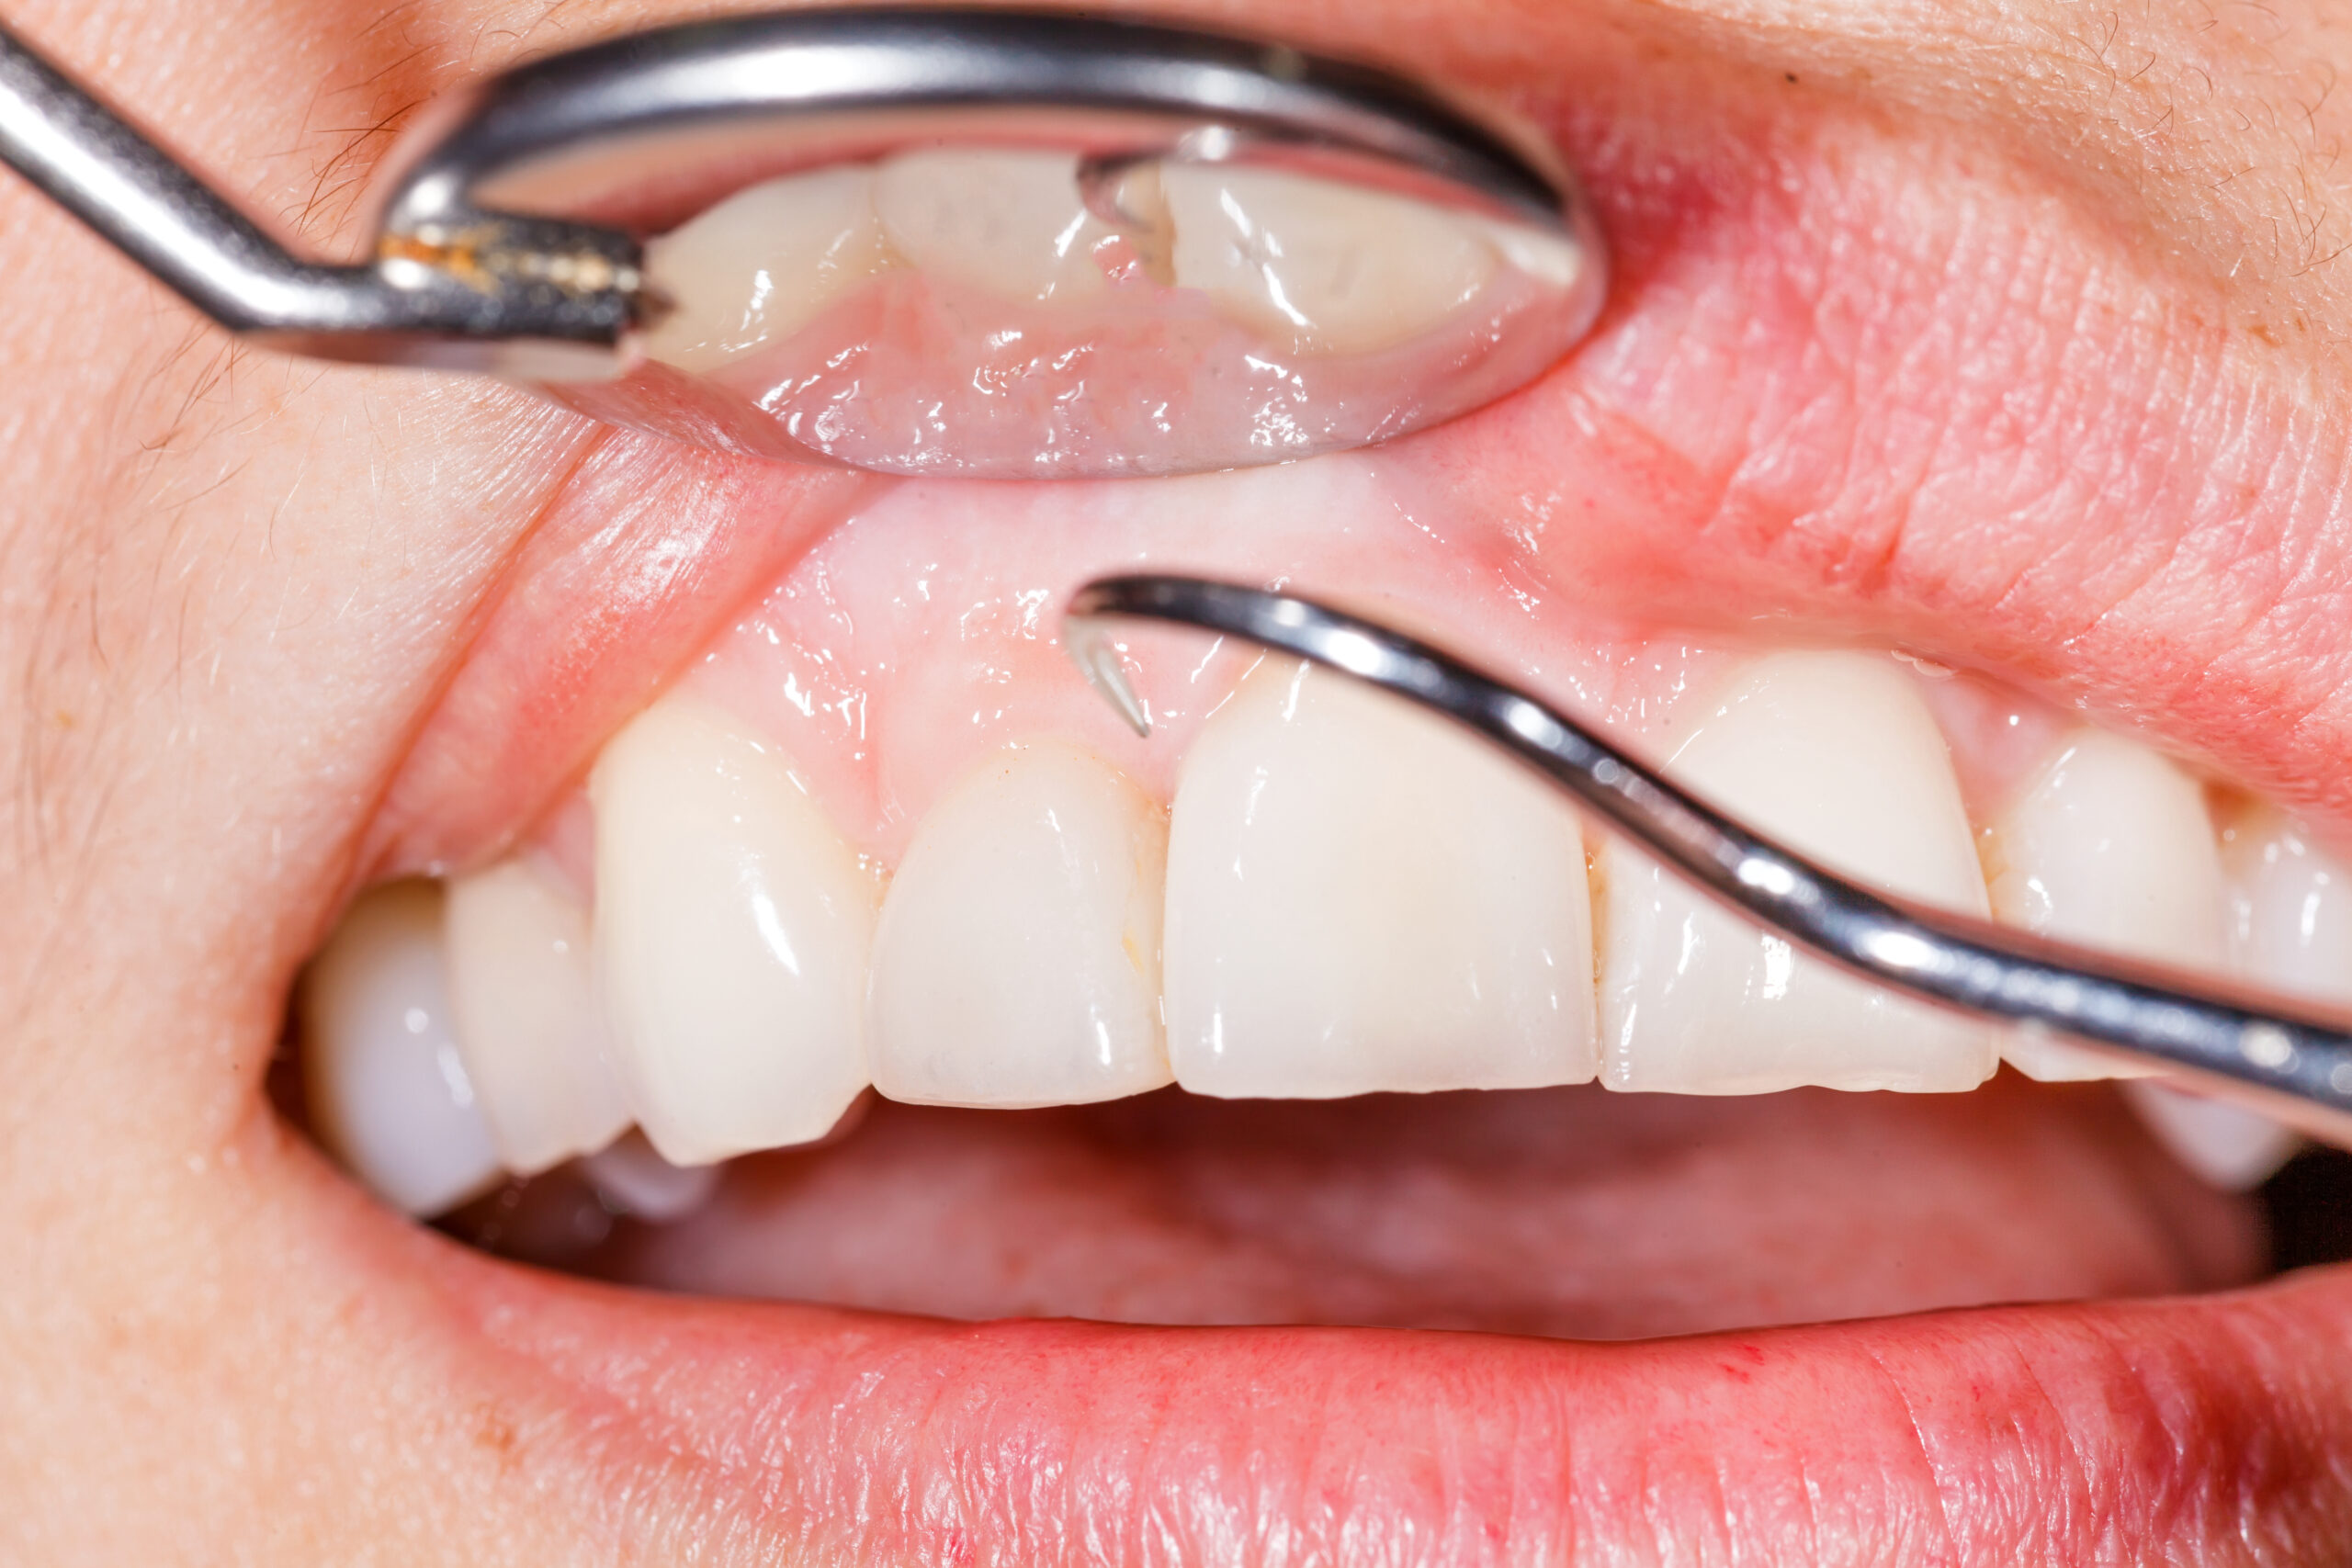 Five Important Risk Factors for Gum Disease